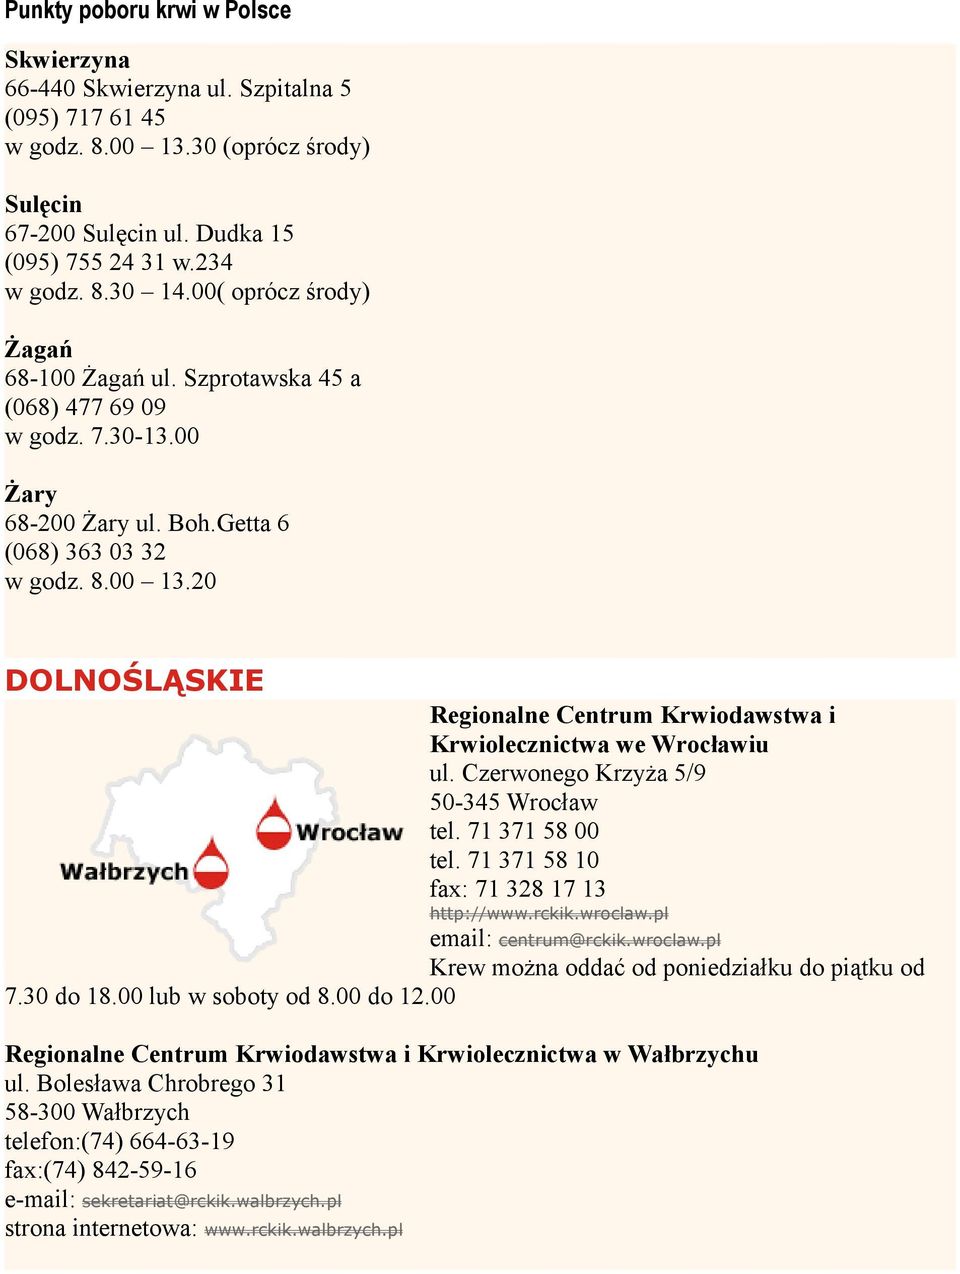 20 DOLNOŚLĄSKIE Krwiolecznictwa we Wrocławiu ul. Czerwonego Krzyża 5/9 50-345 Wrocław tel. 71 371 58 00 tel. 71 371 58 10 fax: 71 328 17 13 http://www.rckik.wroclaw.